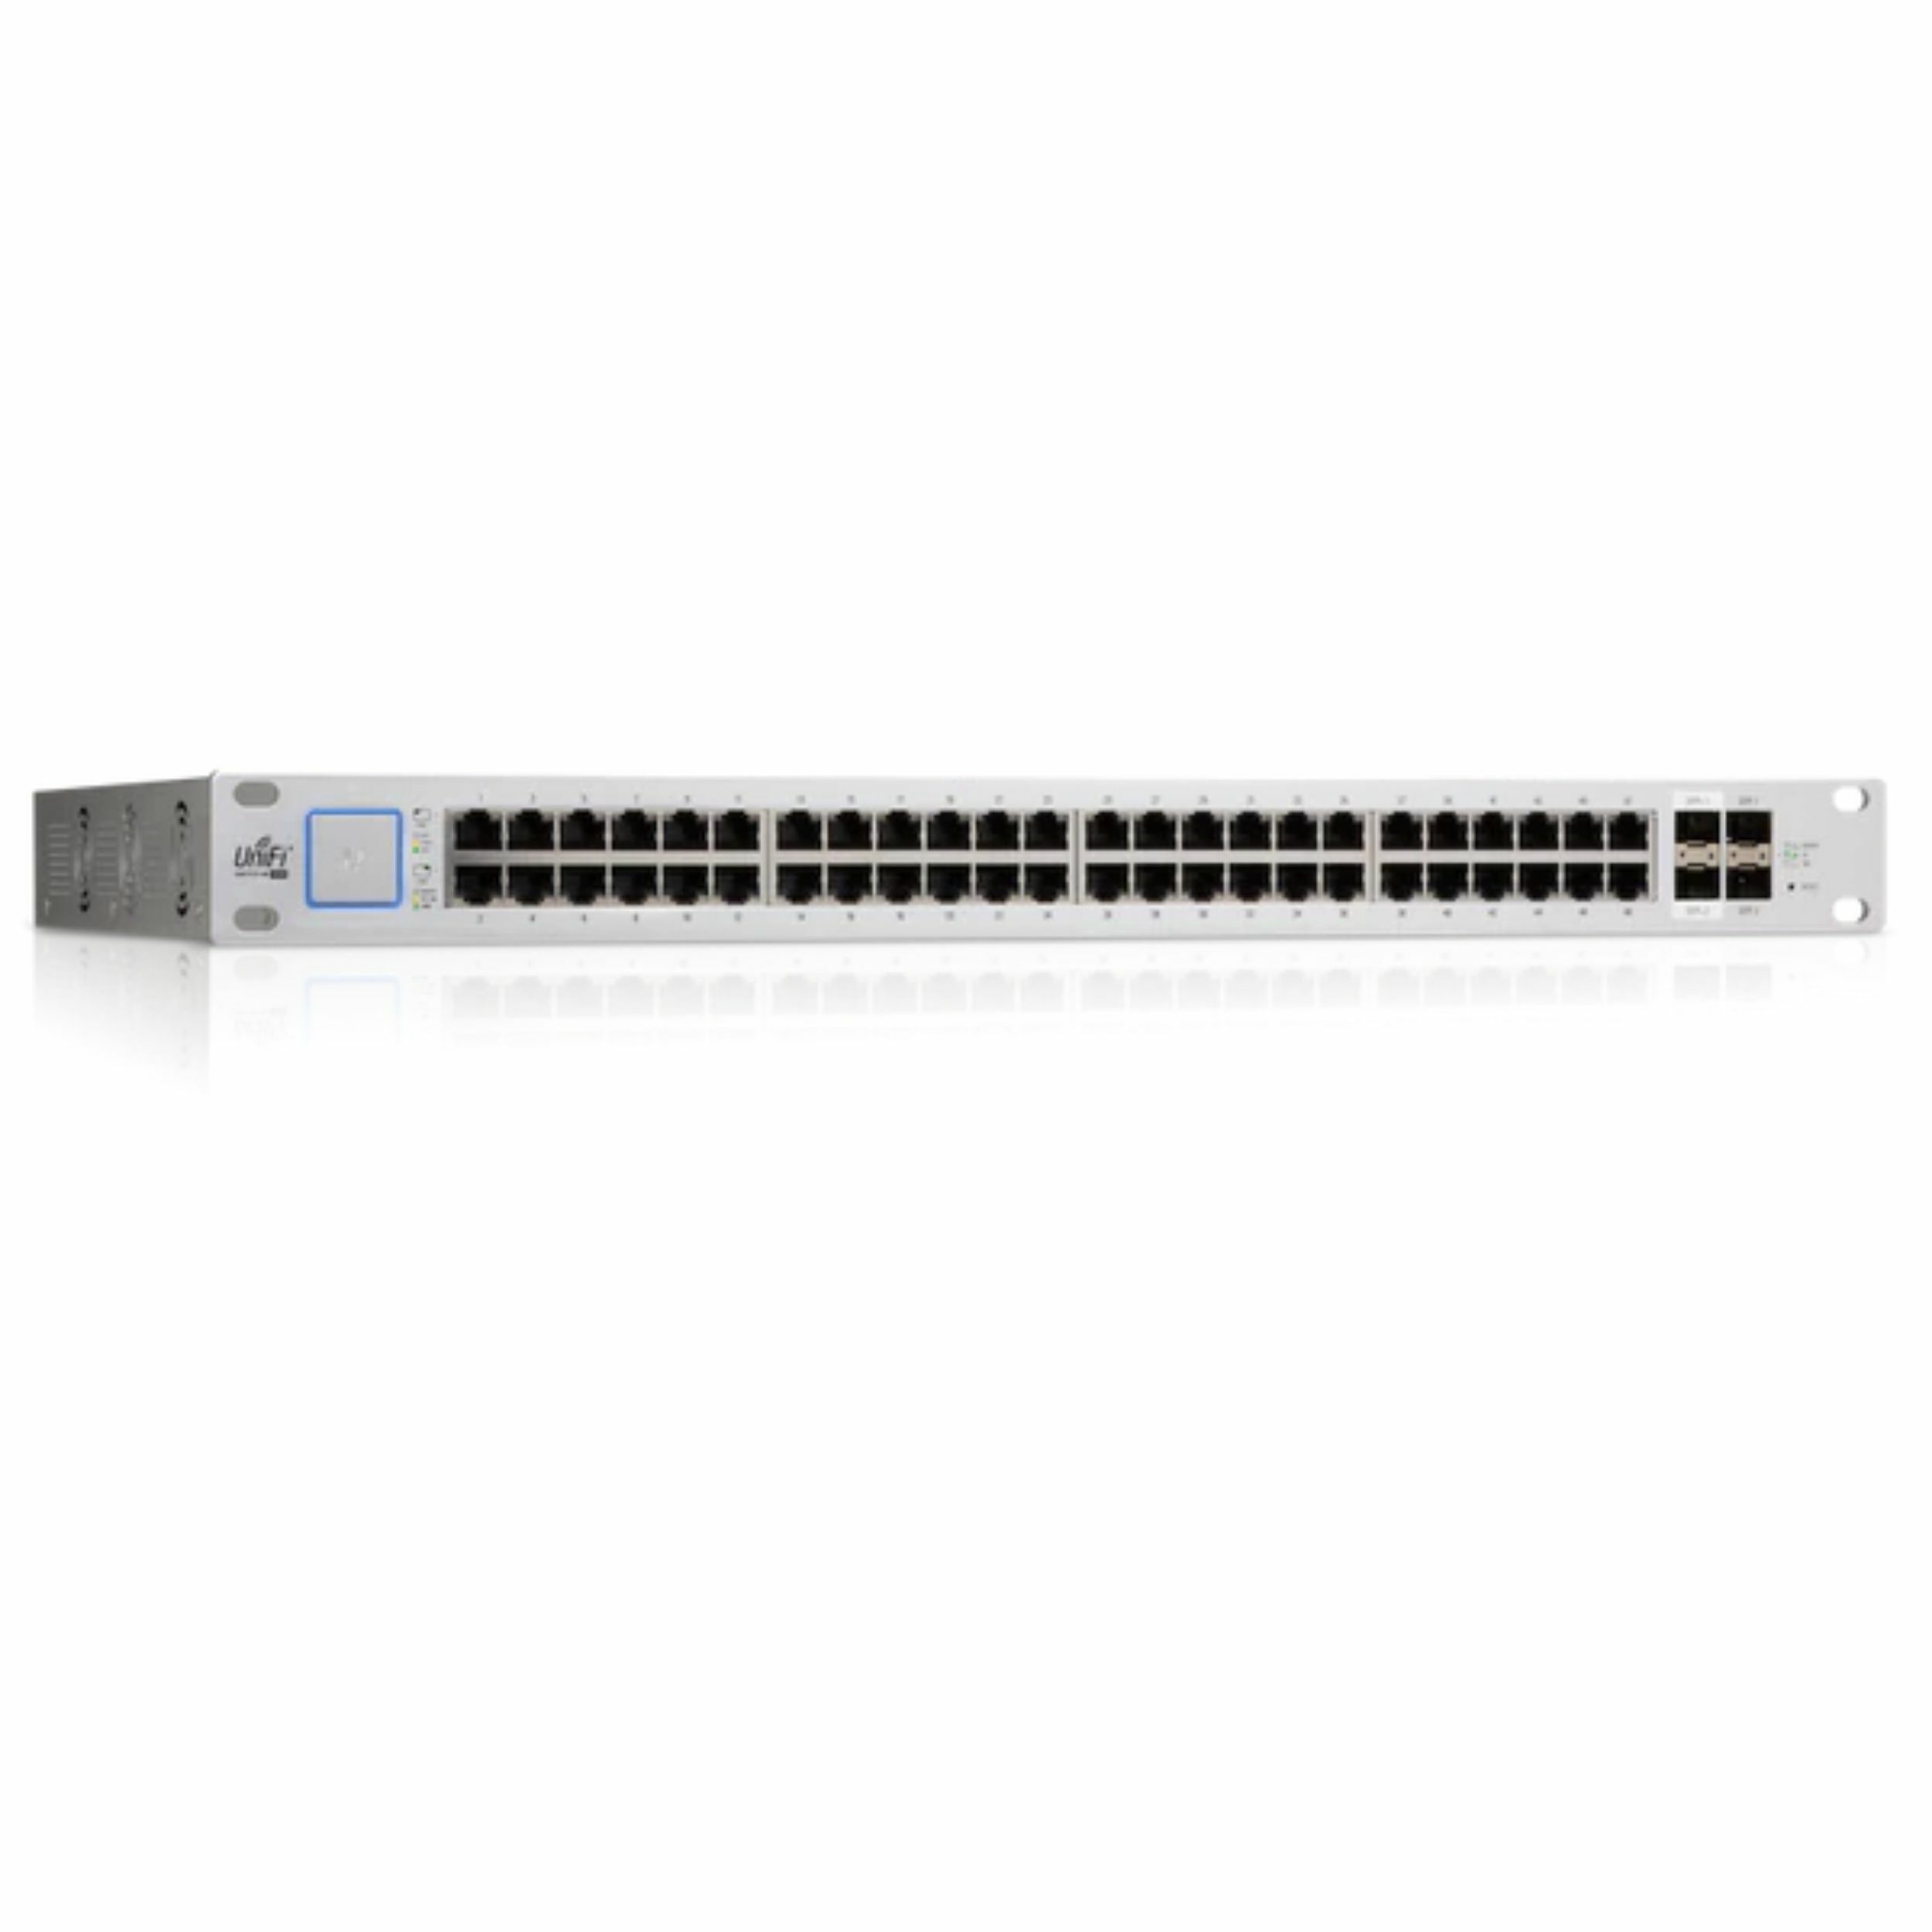 Ubiquiti Networks UniFi Switch 48 Ports - White - image 3 of 5